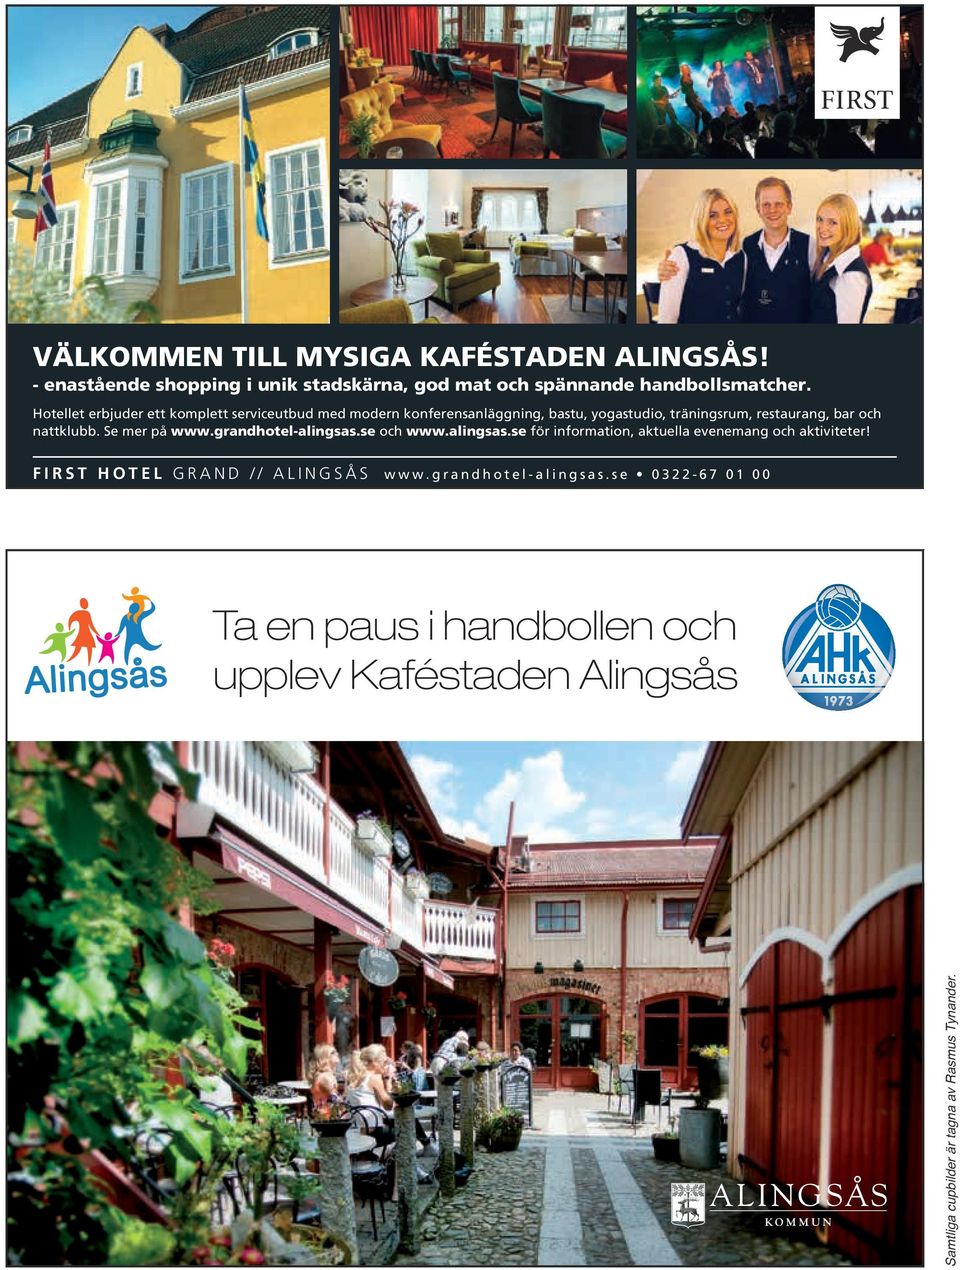 nattklubb. Se mer på www.grandhotel-alingsas.se och www.alingsas.se för information, aktuella evenemang och aktiviteter!